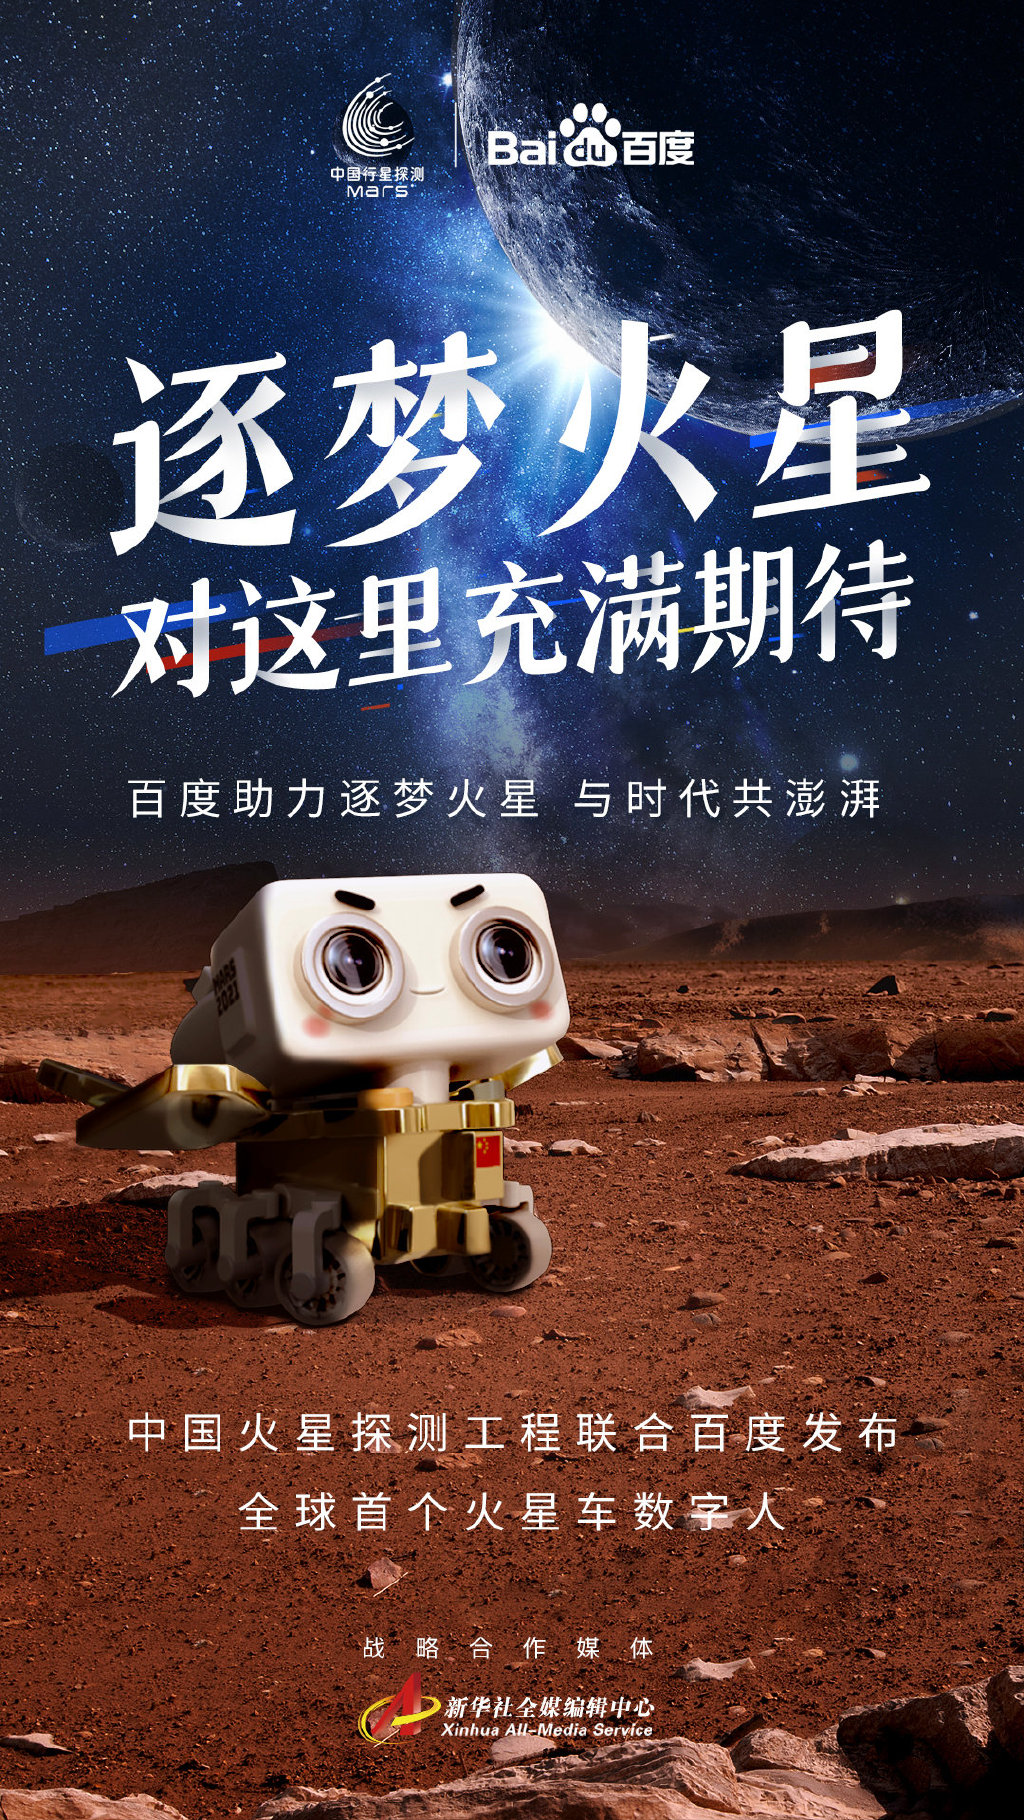 百度 × 中国火星探测工程发布全球首个火星车数字人